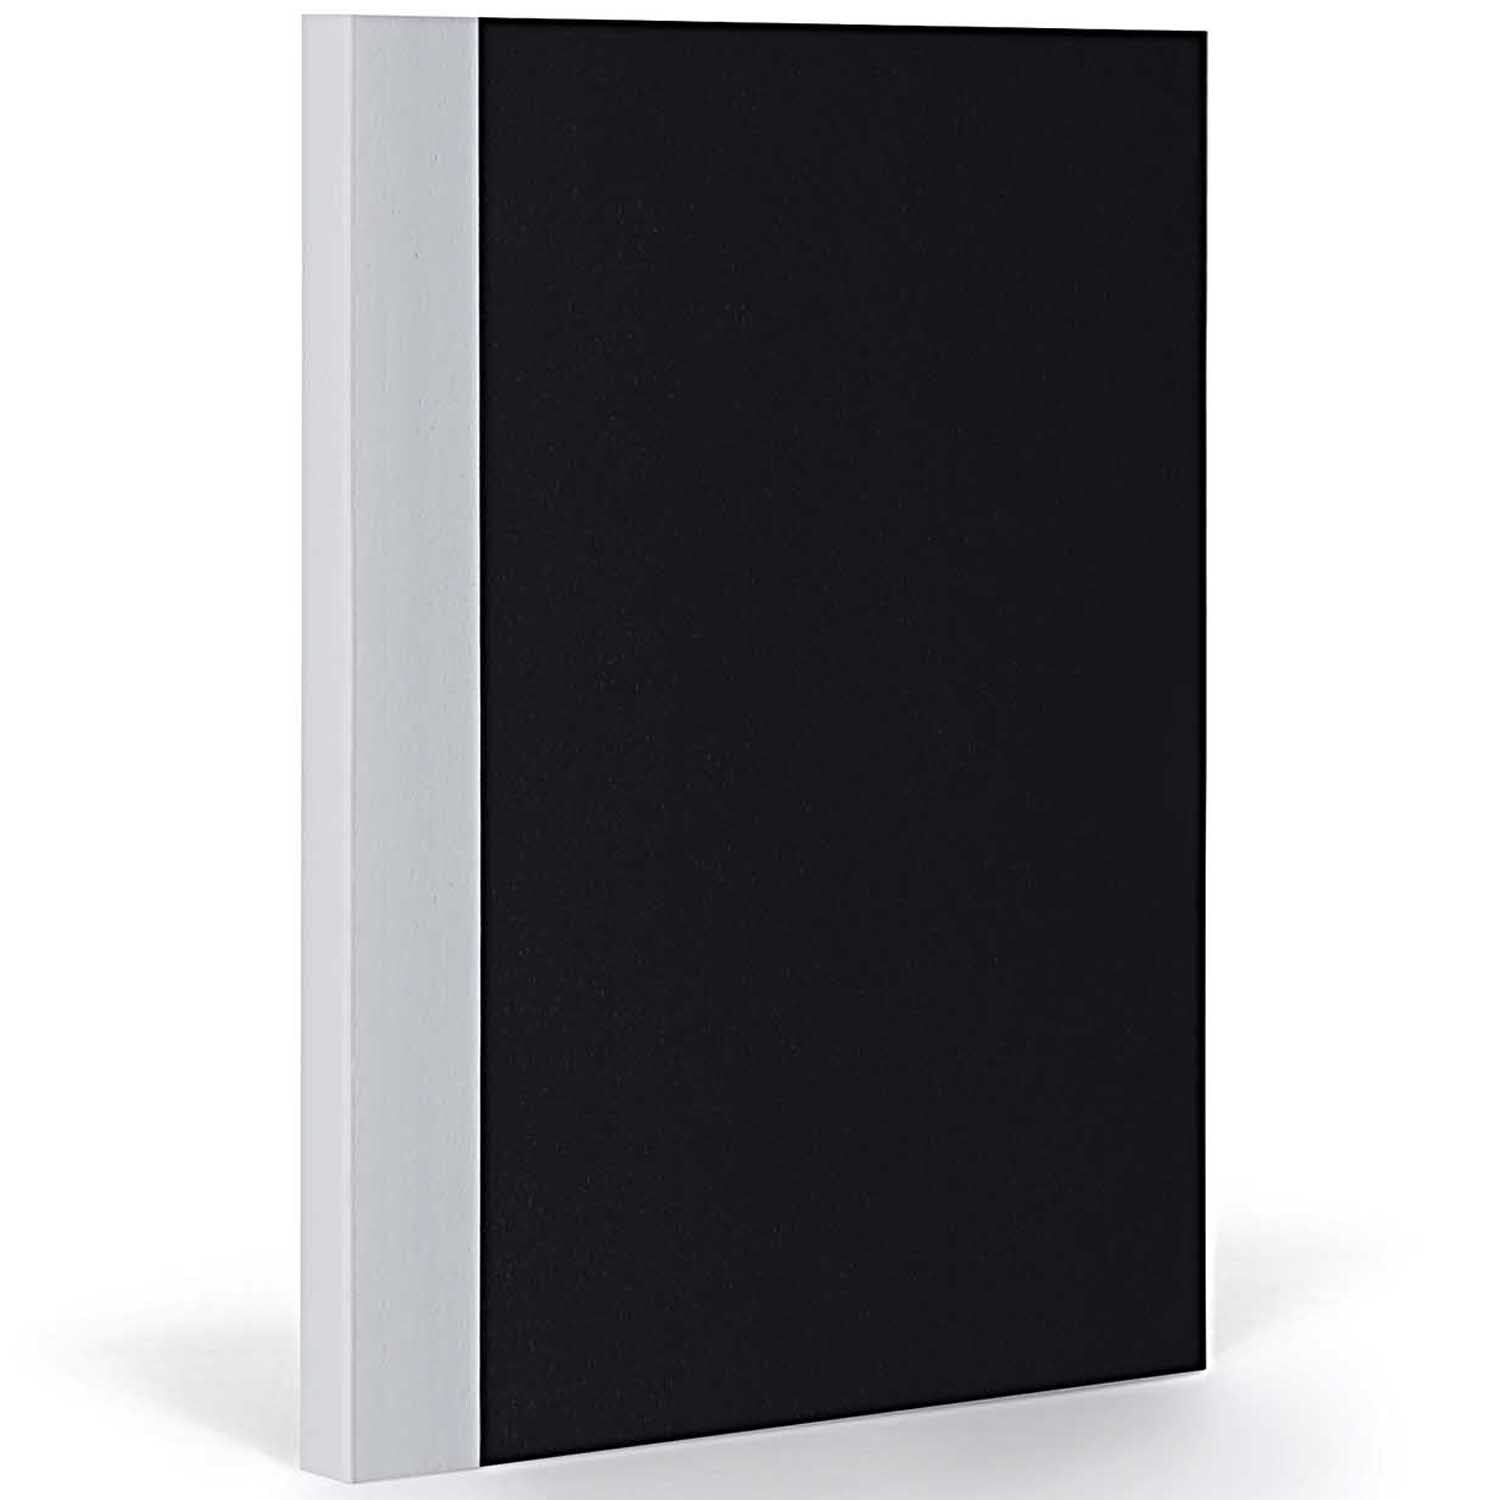 Notizbuch XL liniert black-coolgrey